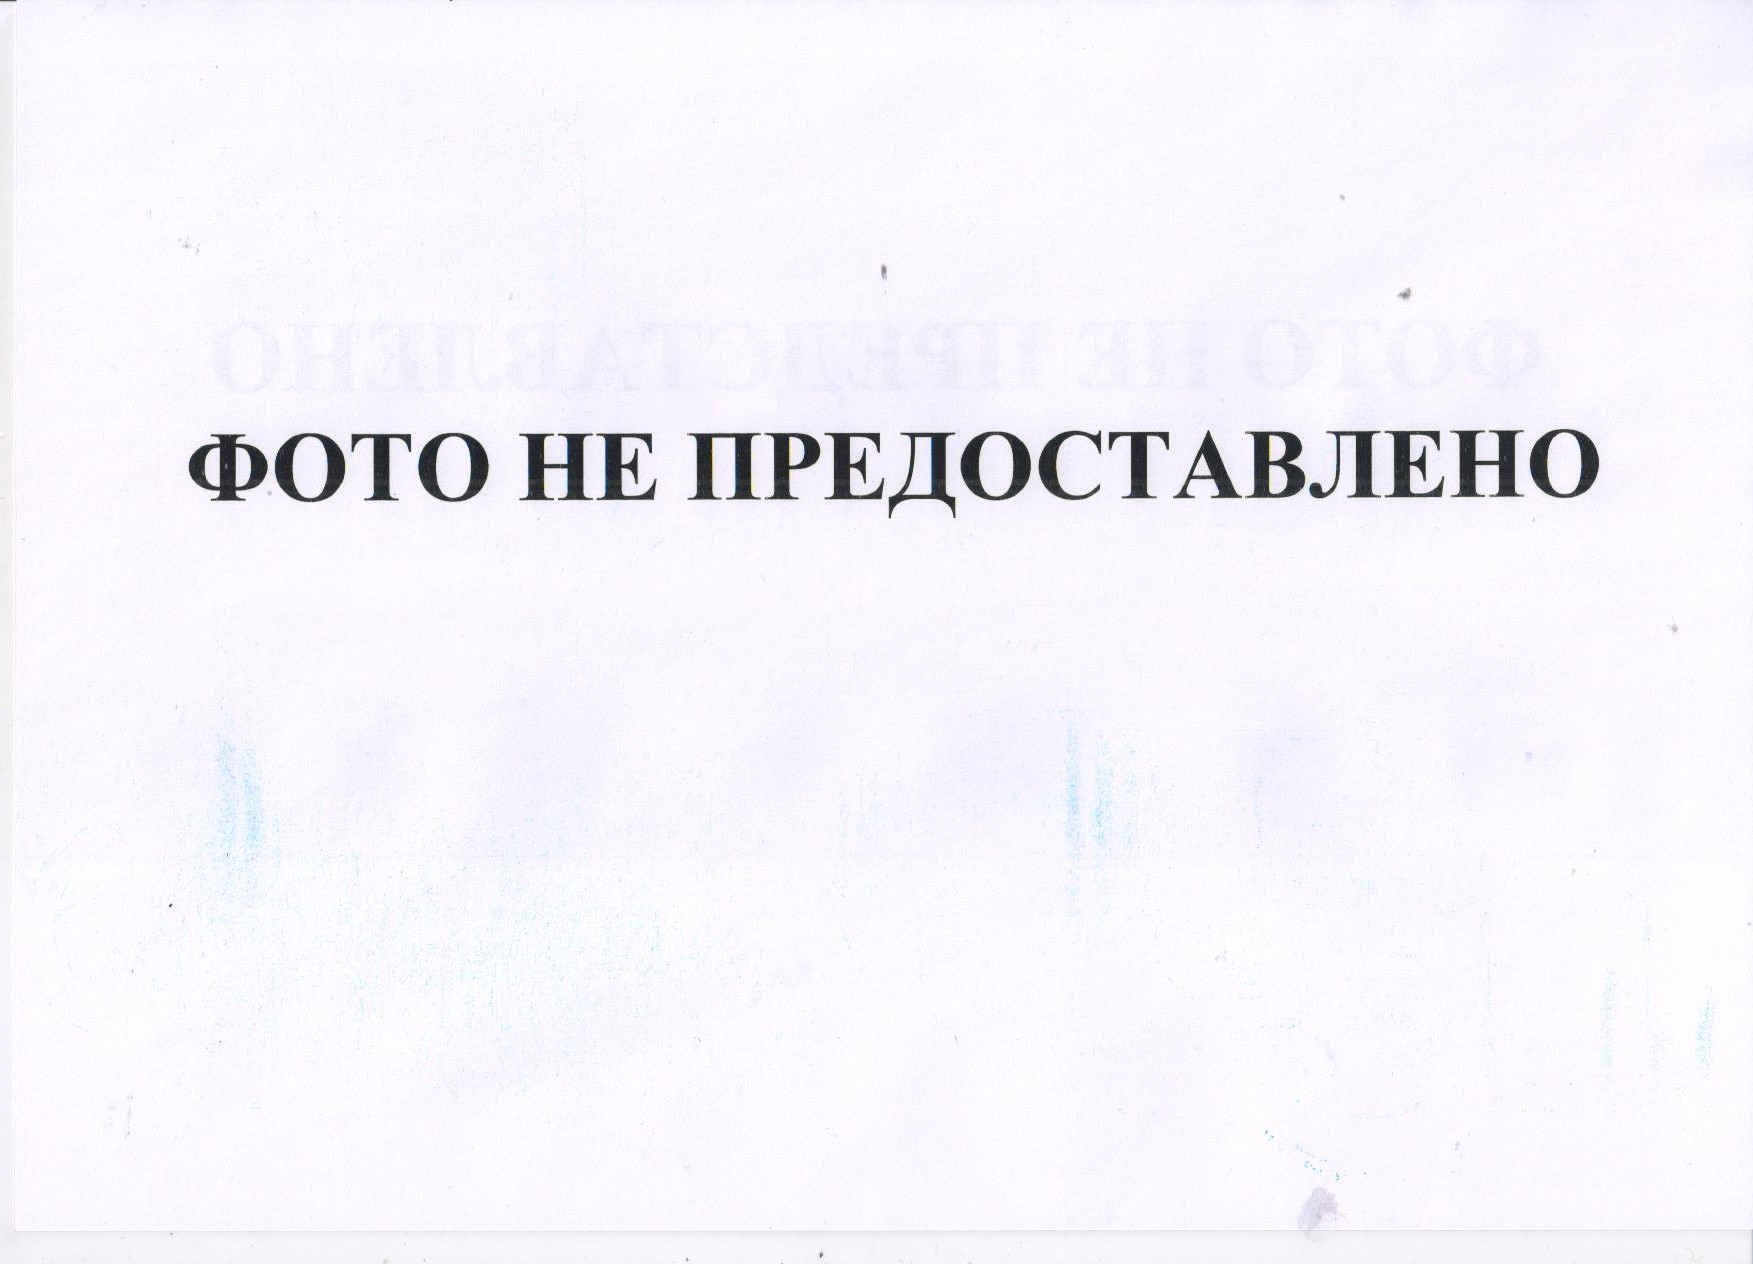 Право требования по исполнительному документу № 2-1066-09/4 от 01.07.2009 в отношении Павлова Геннад